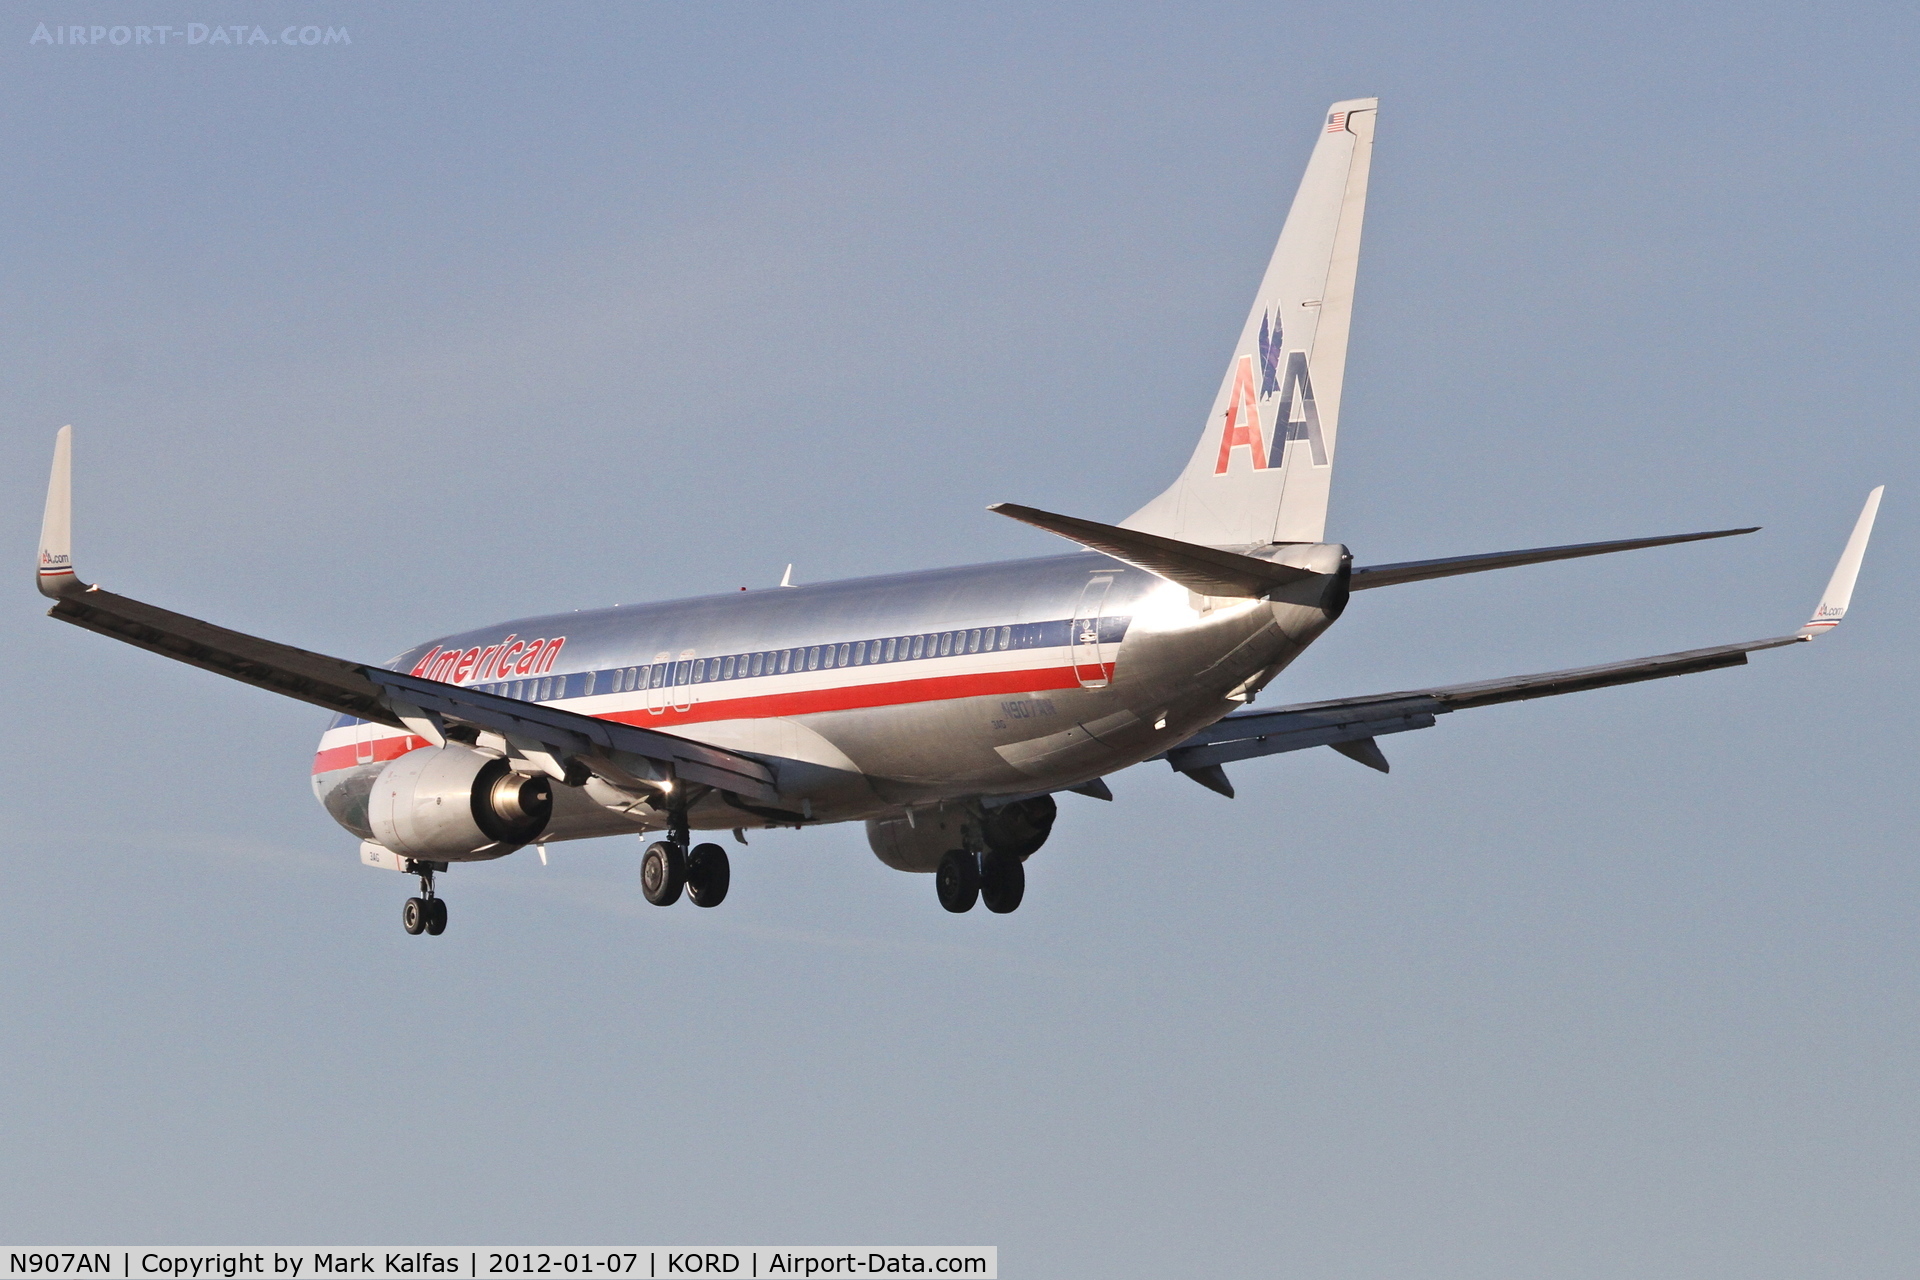 N907AN, 1999 Boeing 737-823 C/N 29509, American Airlines Boeing 737-823, AAL1605 arriving from KBOS, RWY 28 approach KORD.